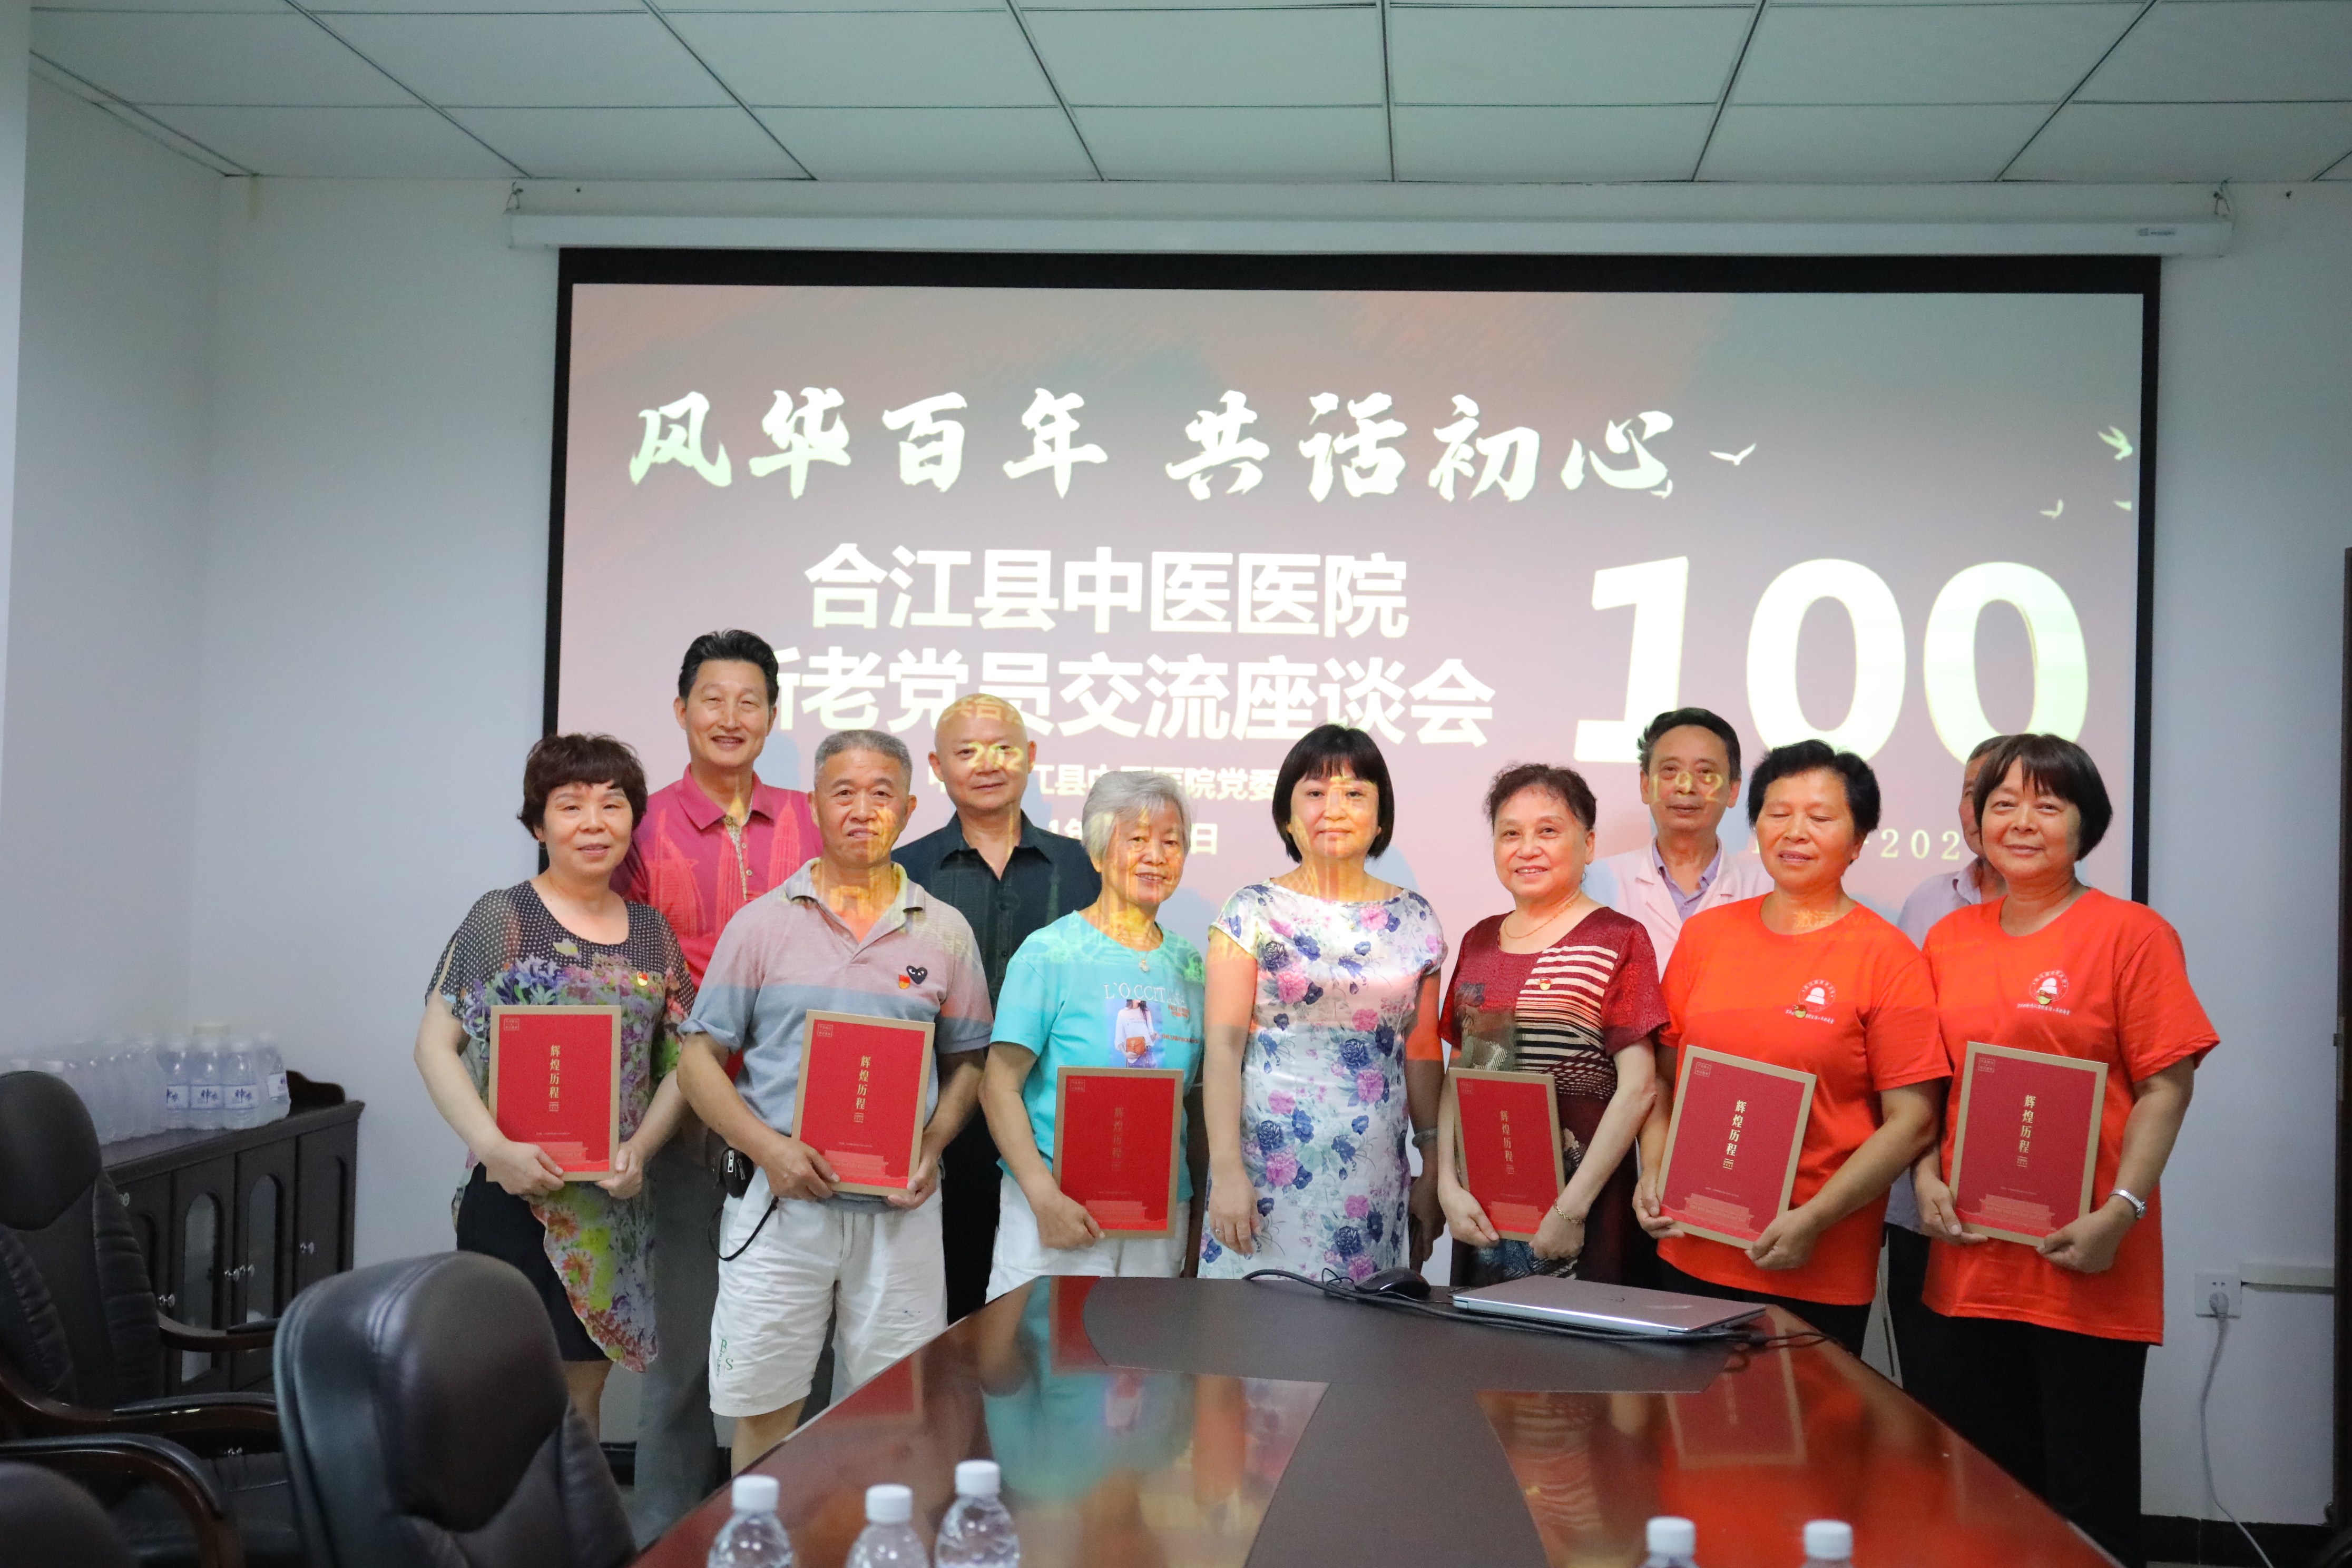 合江县中医医院开展庆祝建党 100 周年系列活动